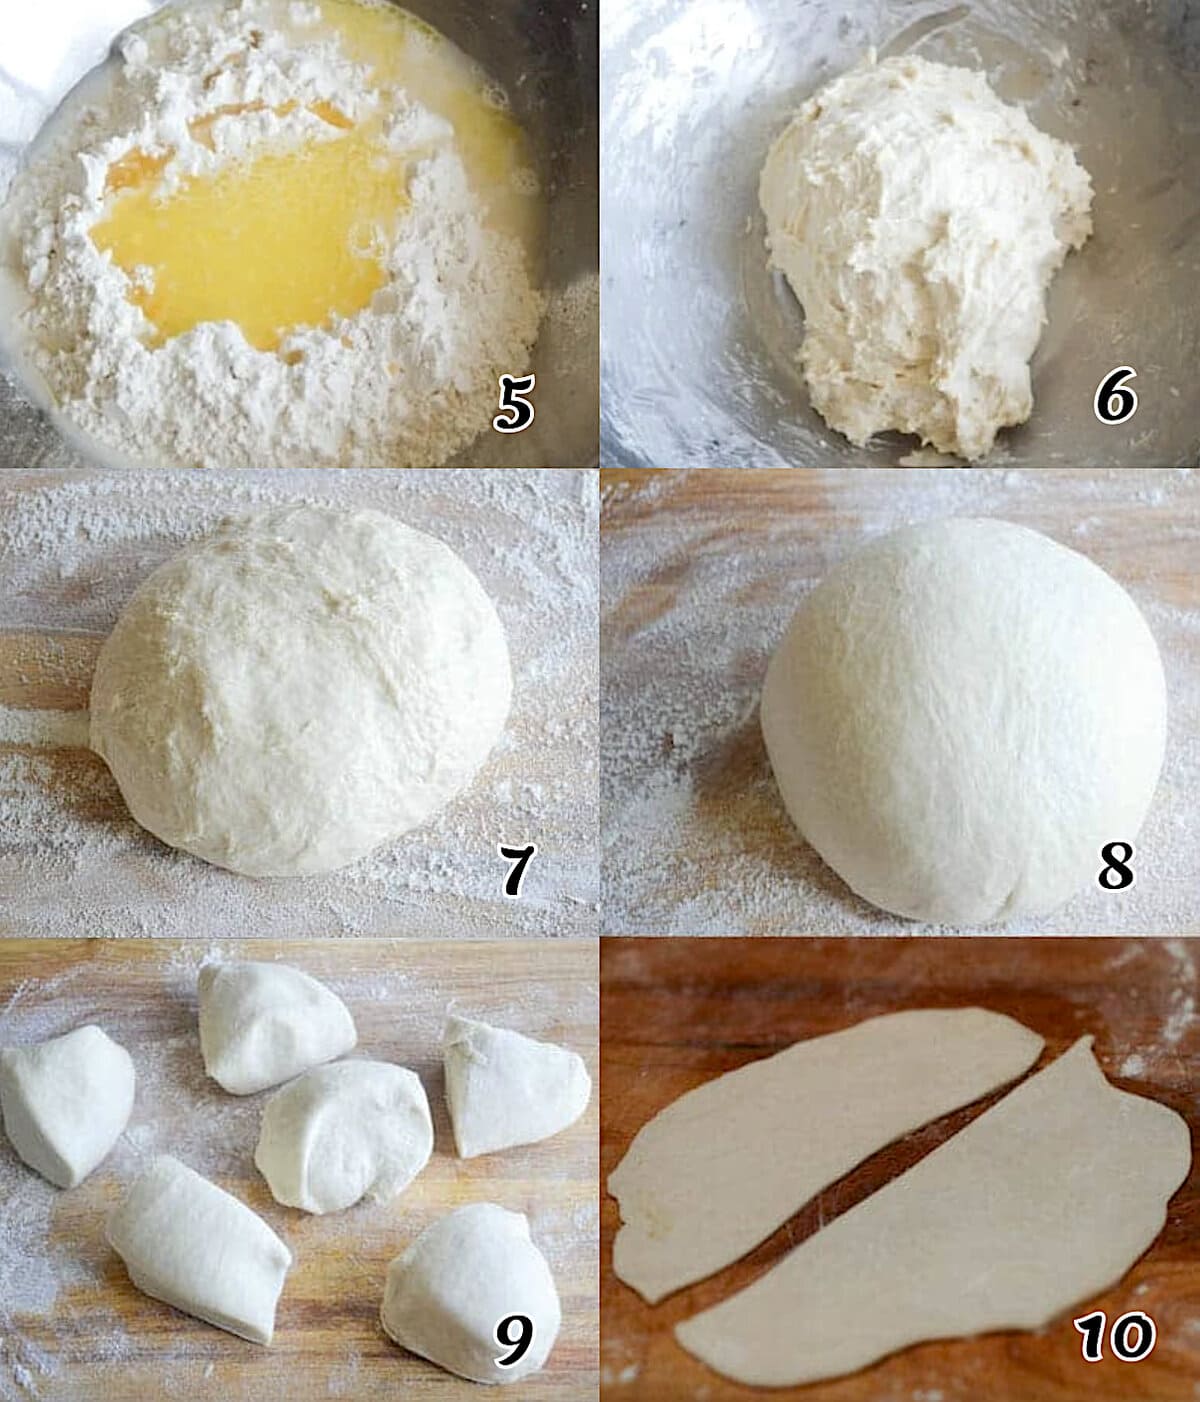 Make the dough